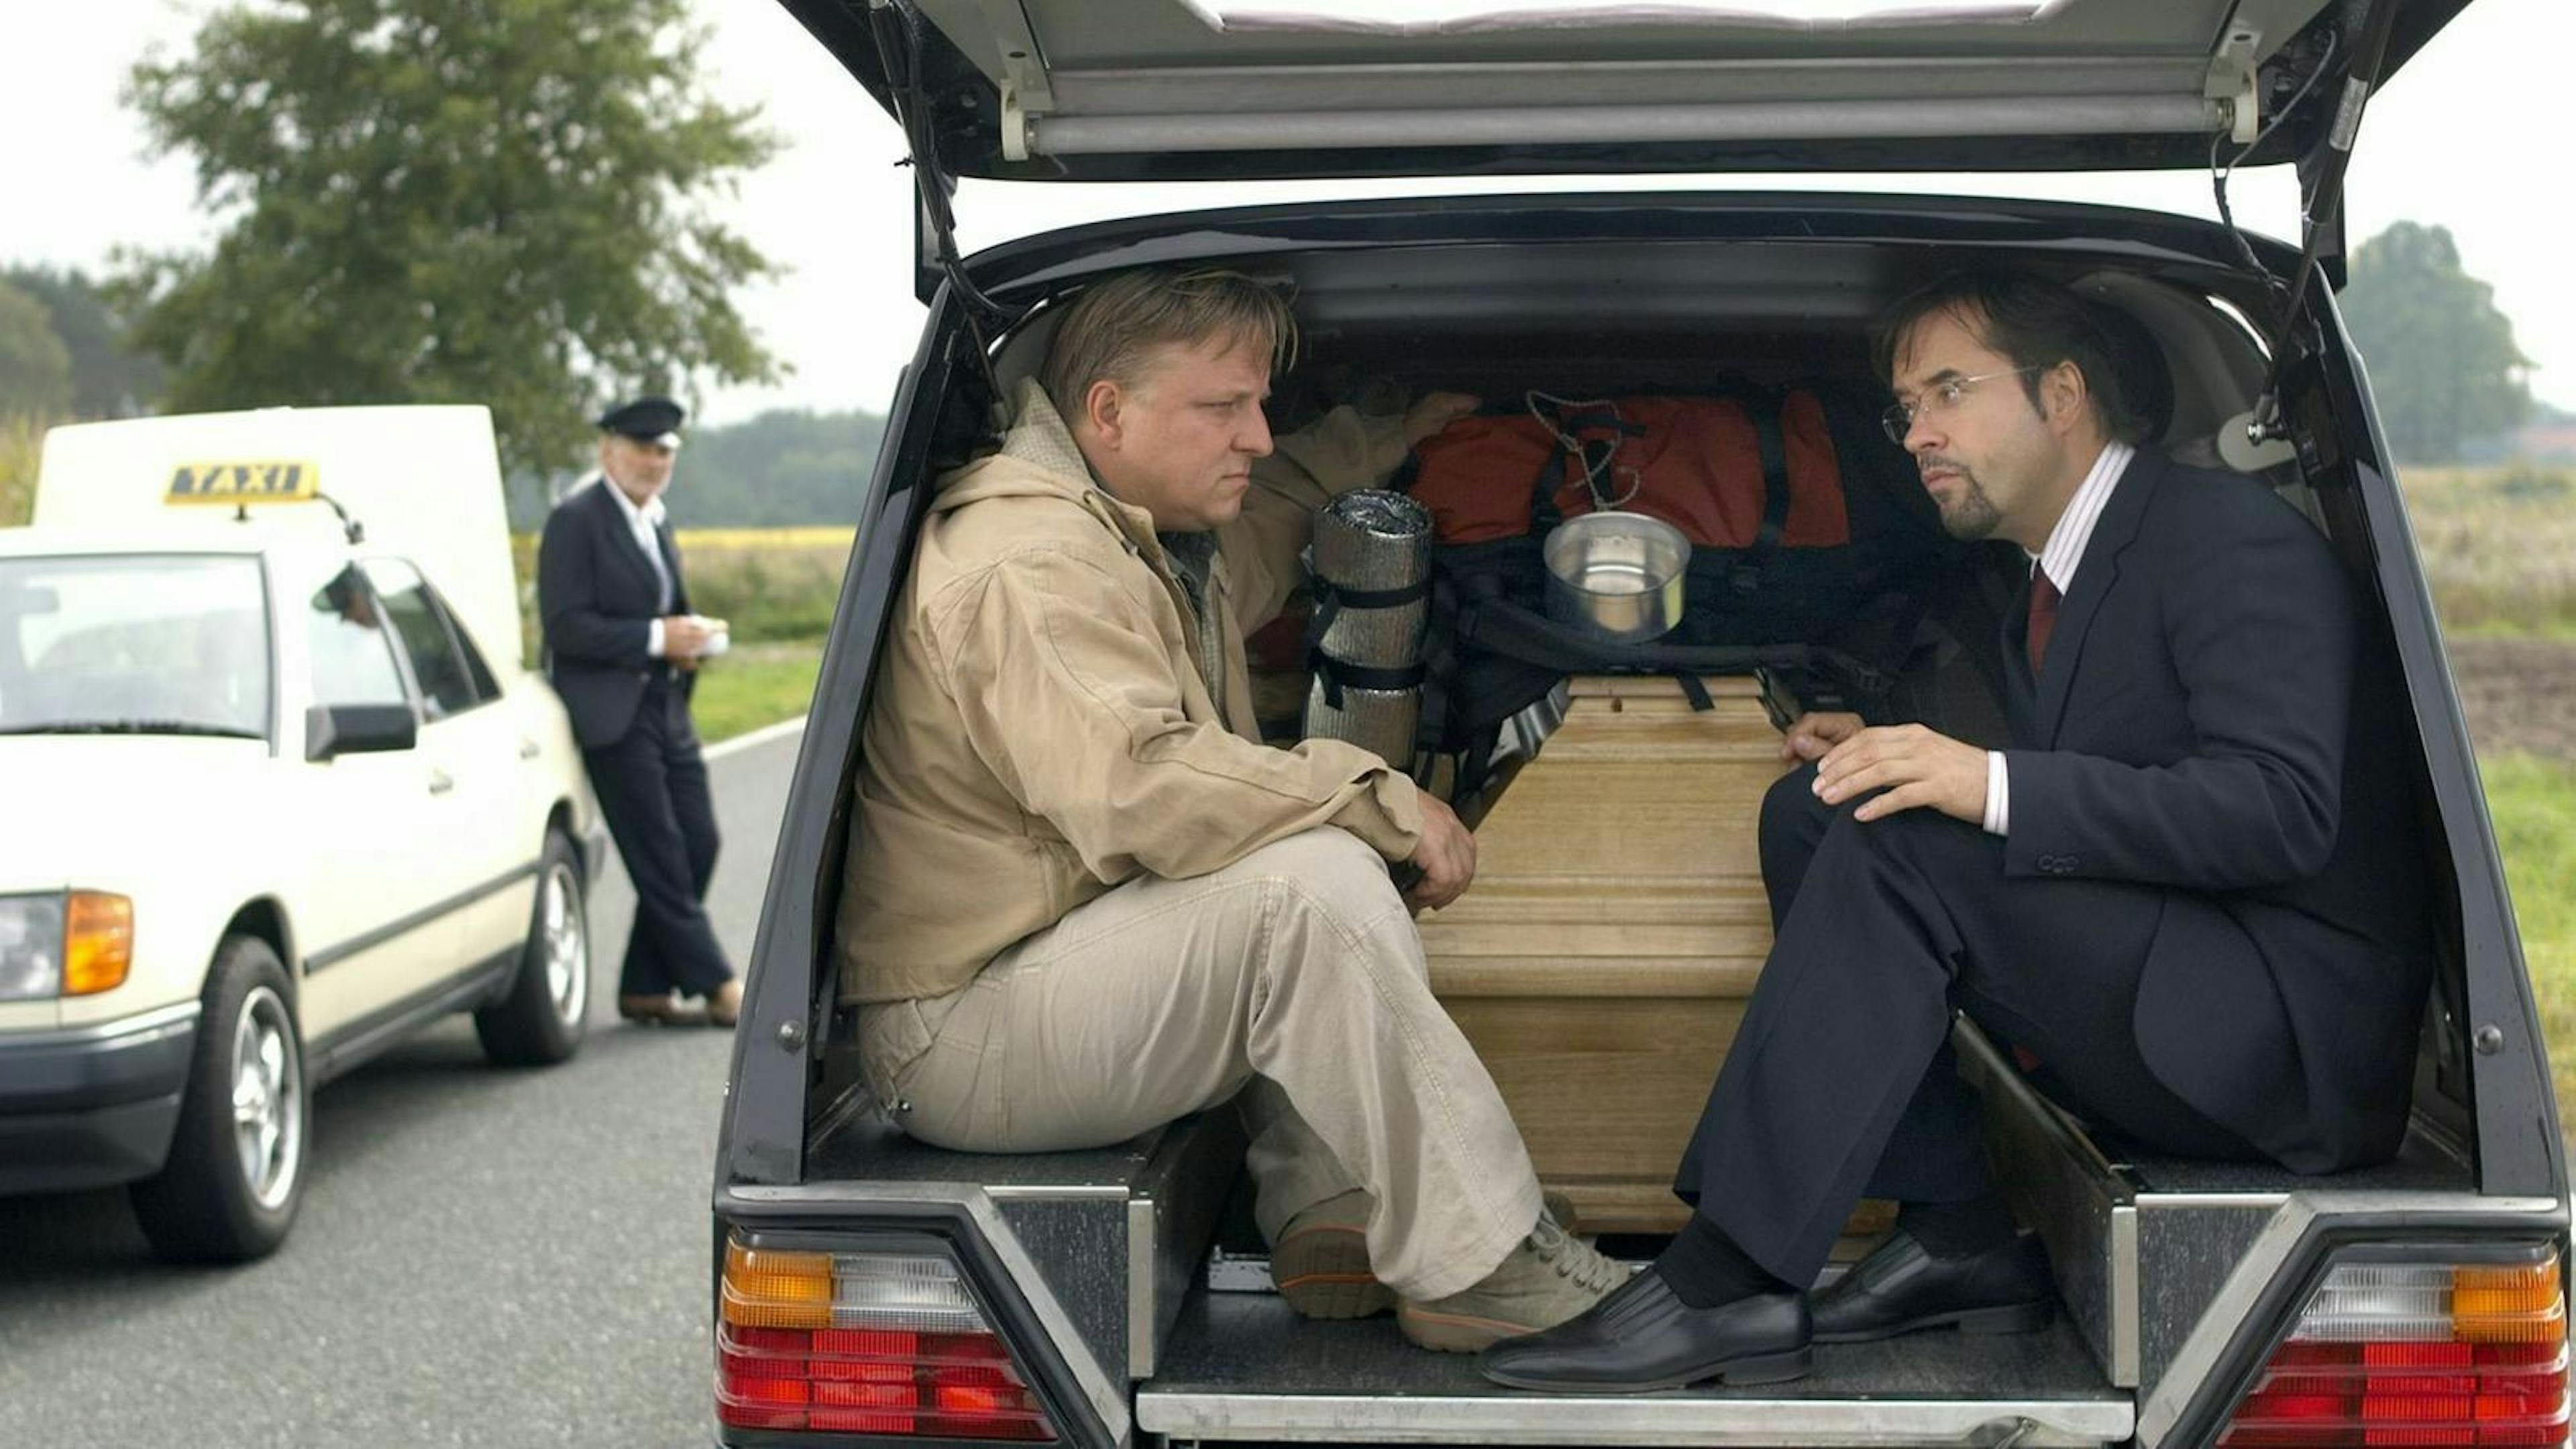 Zu sehen sind zwei Tatortkommissare im Kofferraum eines Leichenwagens